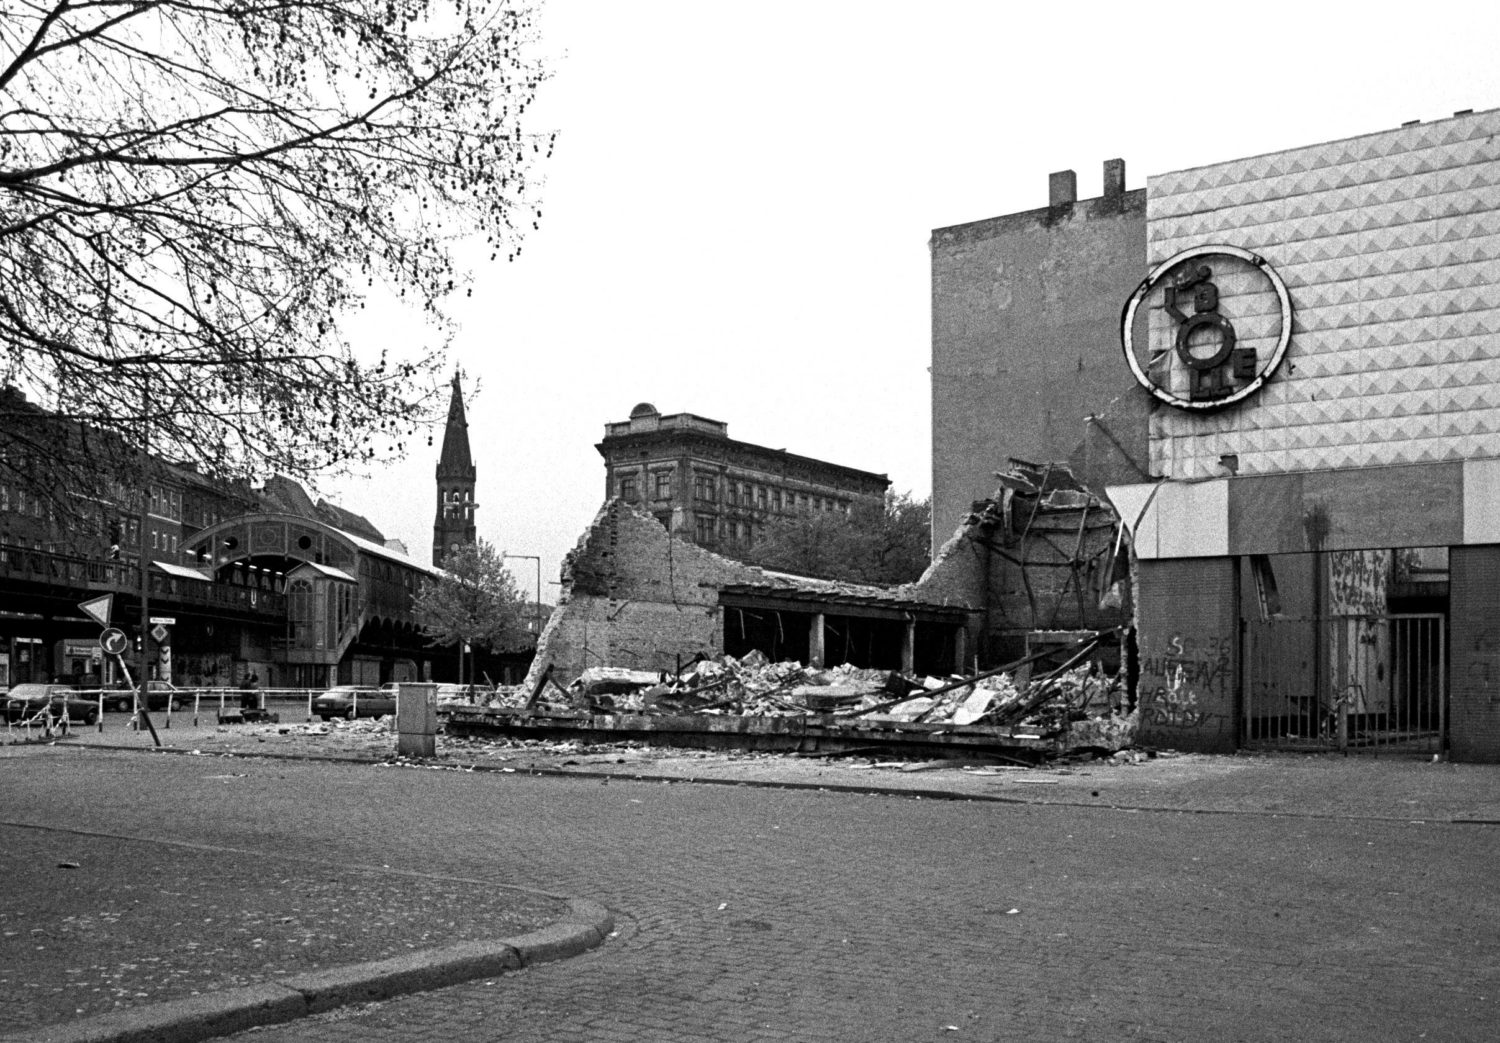 Geplünderte und abgebrannte Bolle-Fililale nach den schweren Krawallen am 1. Mai 1987 in Kreuzberg.  Foto: Imago/Peter Homann